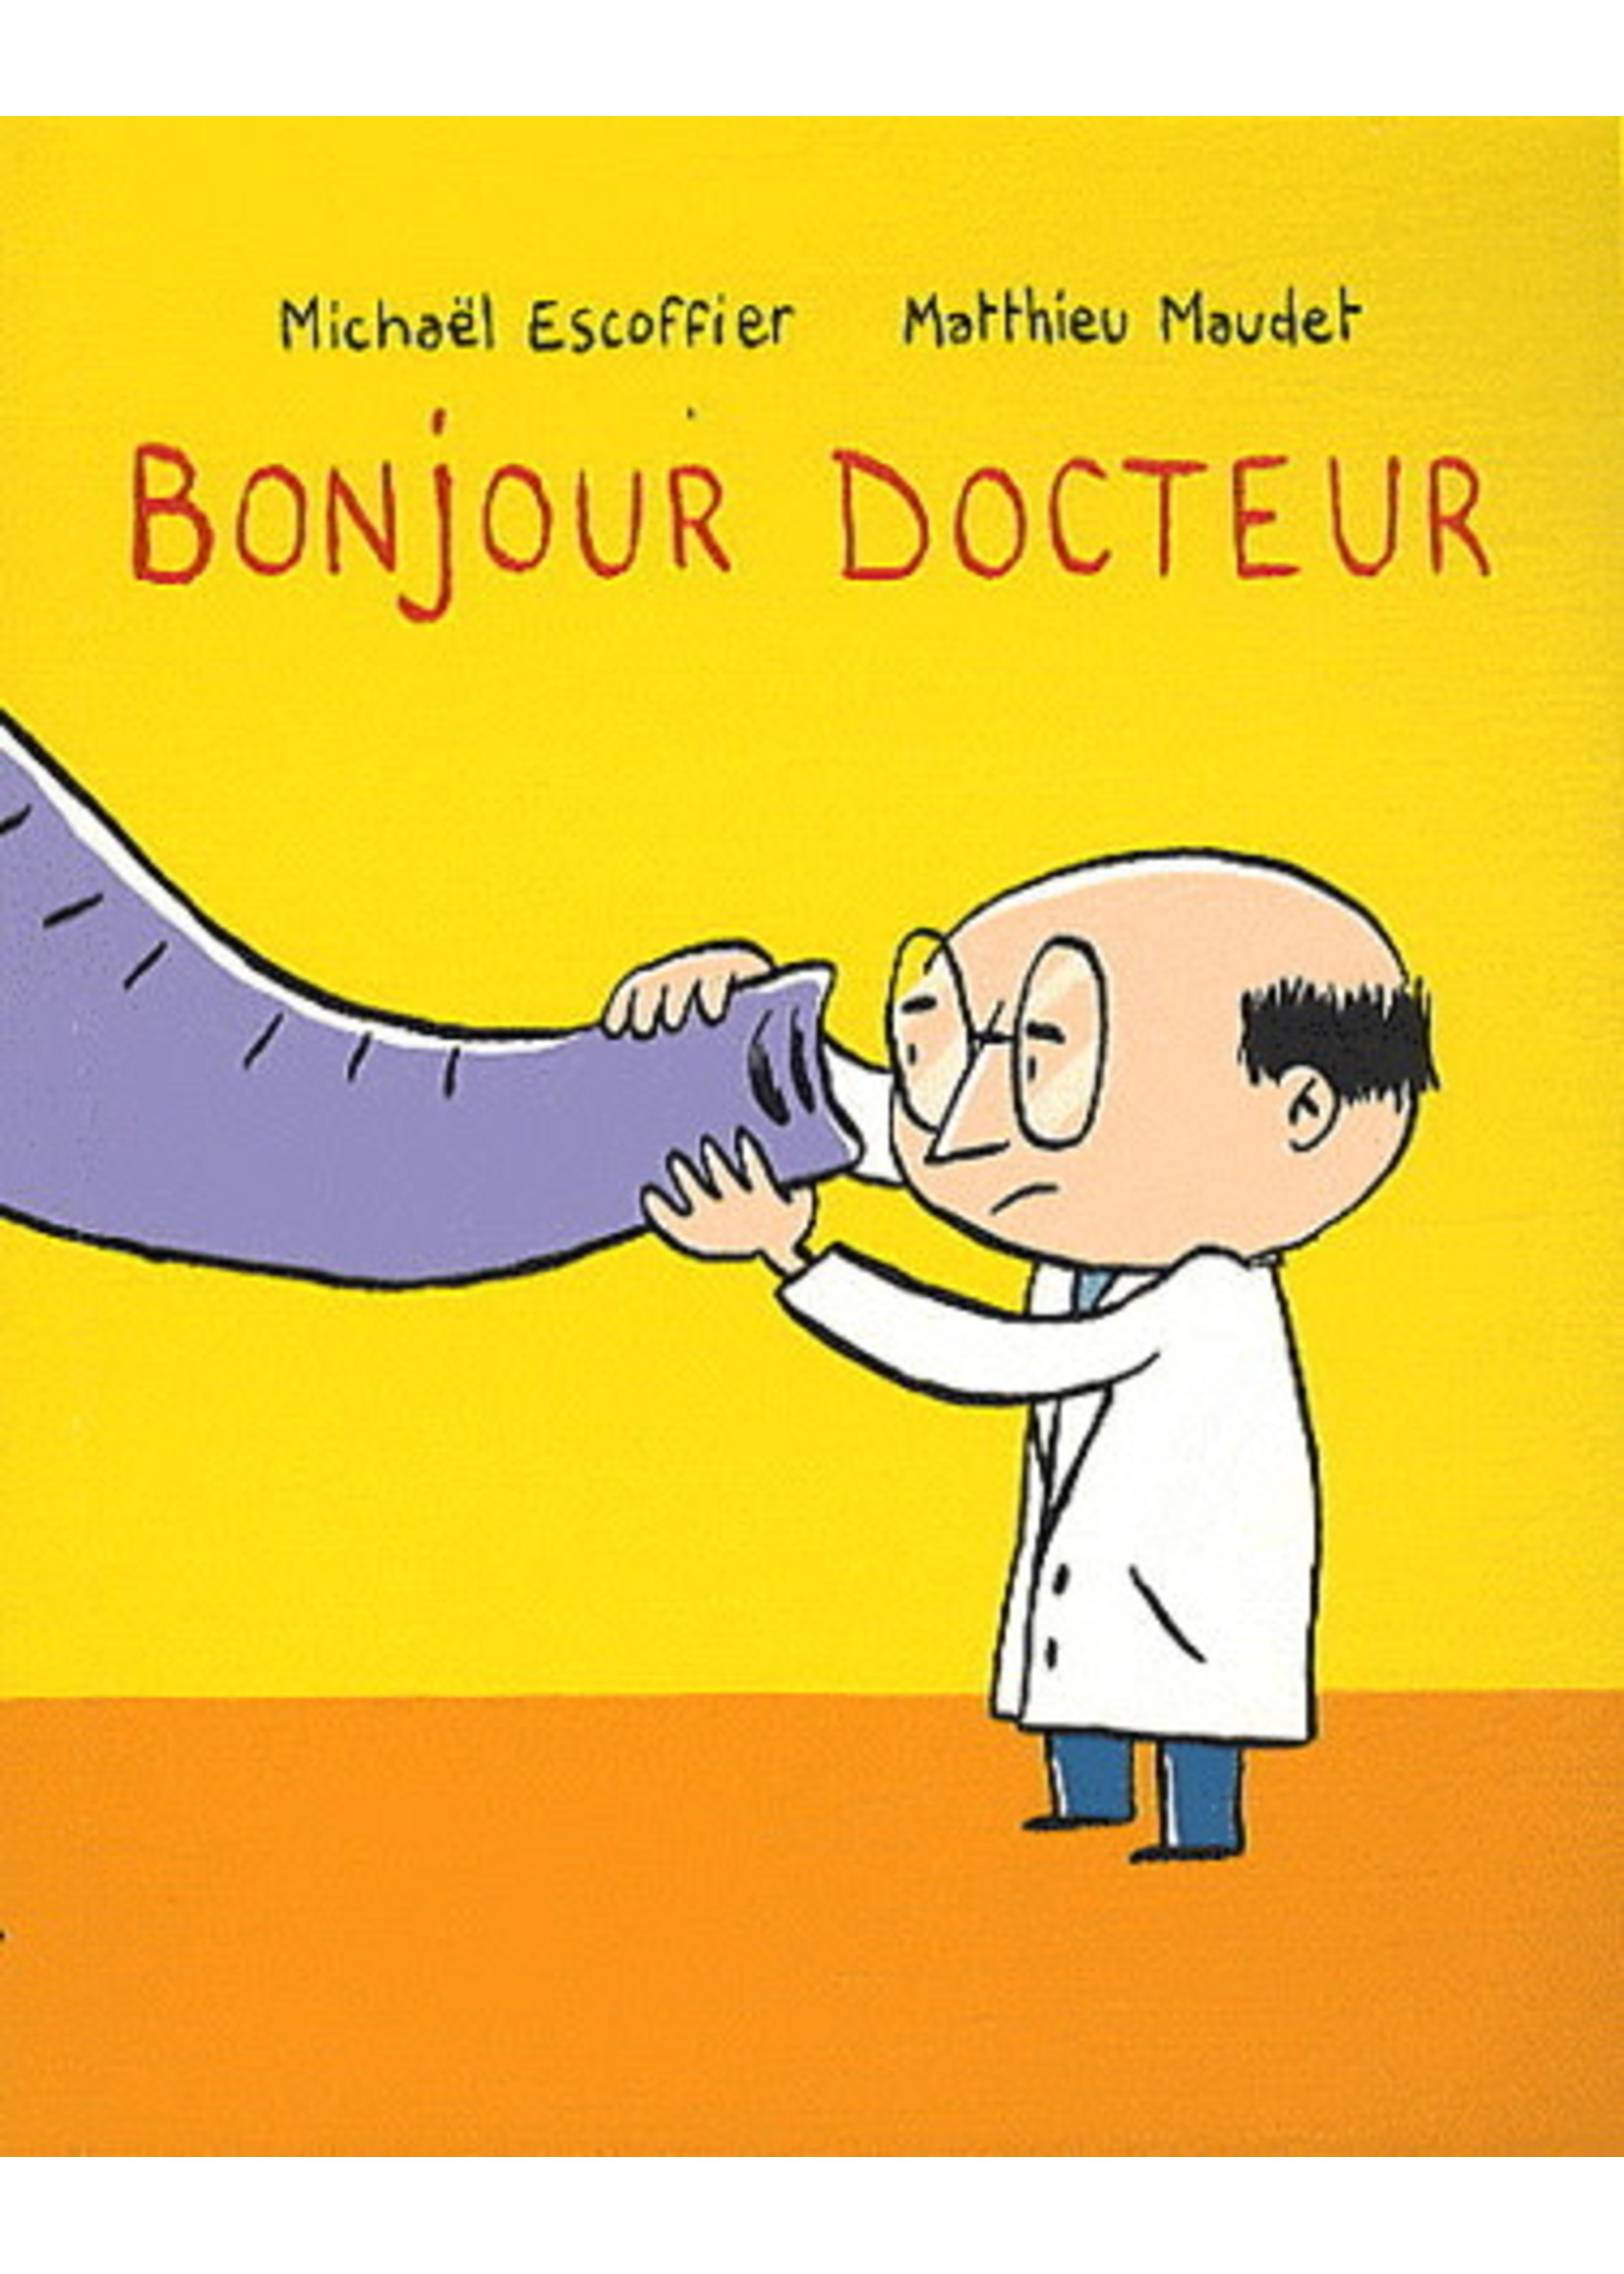 Bonjour docteur by Michaël Escoffier, Mattieu Maudet